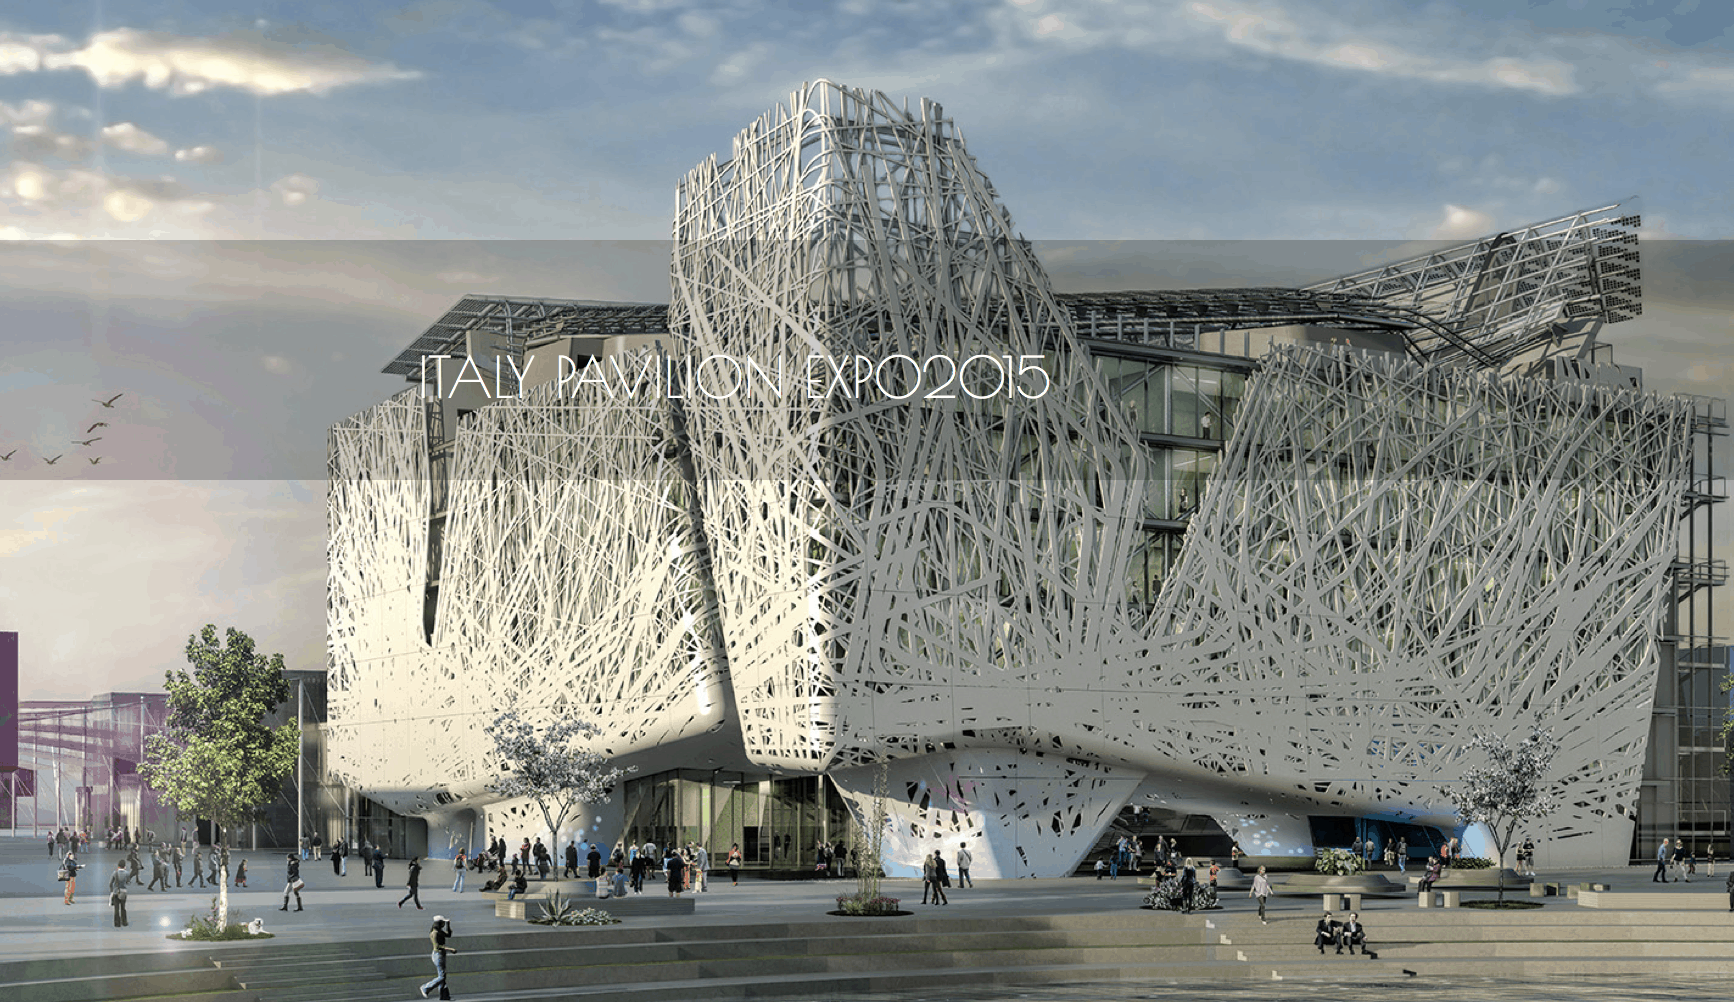 Expo2015 - Itally pavilion